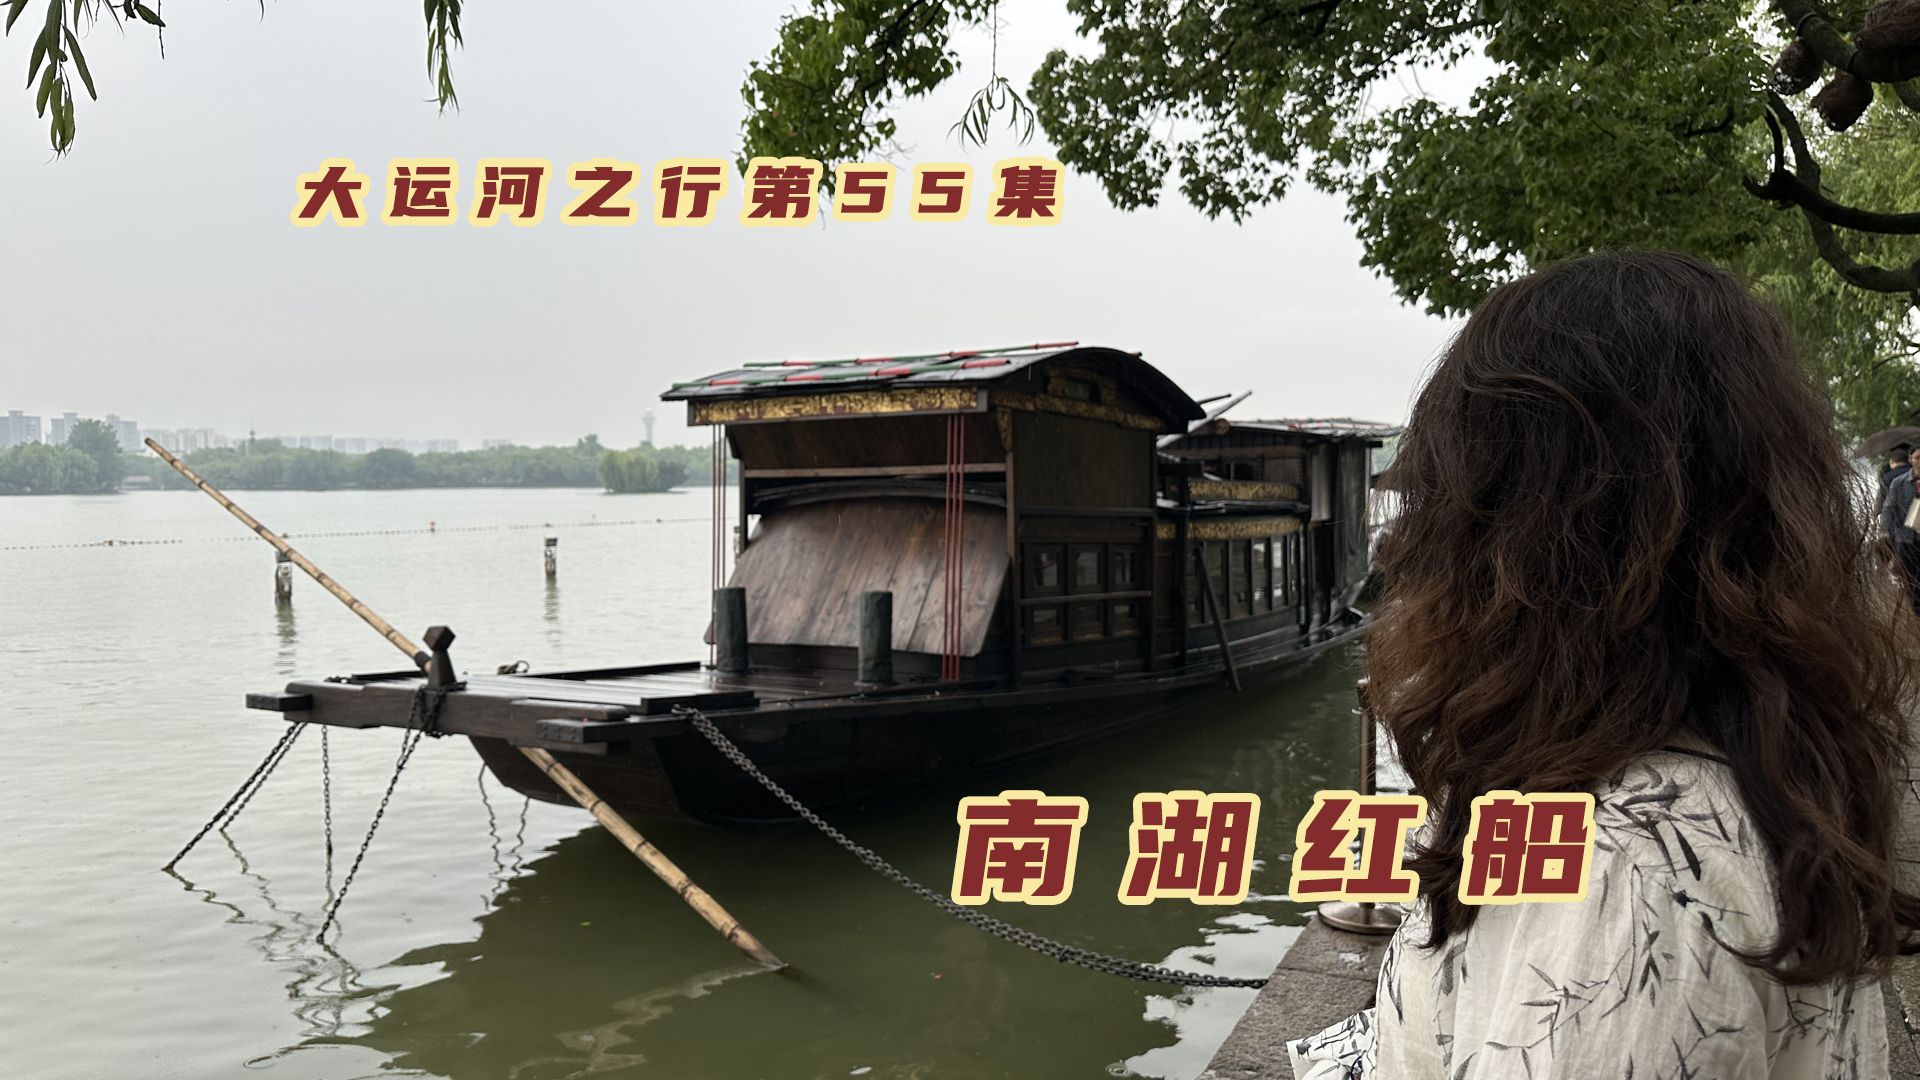 自驾浙江嘉兴，103年前南湖上的这艘红船，改变了中国历史进程